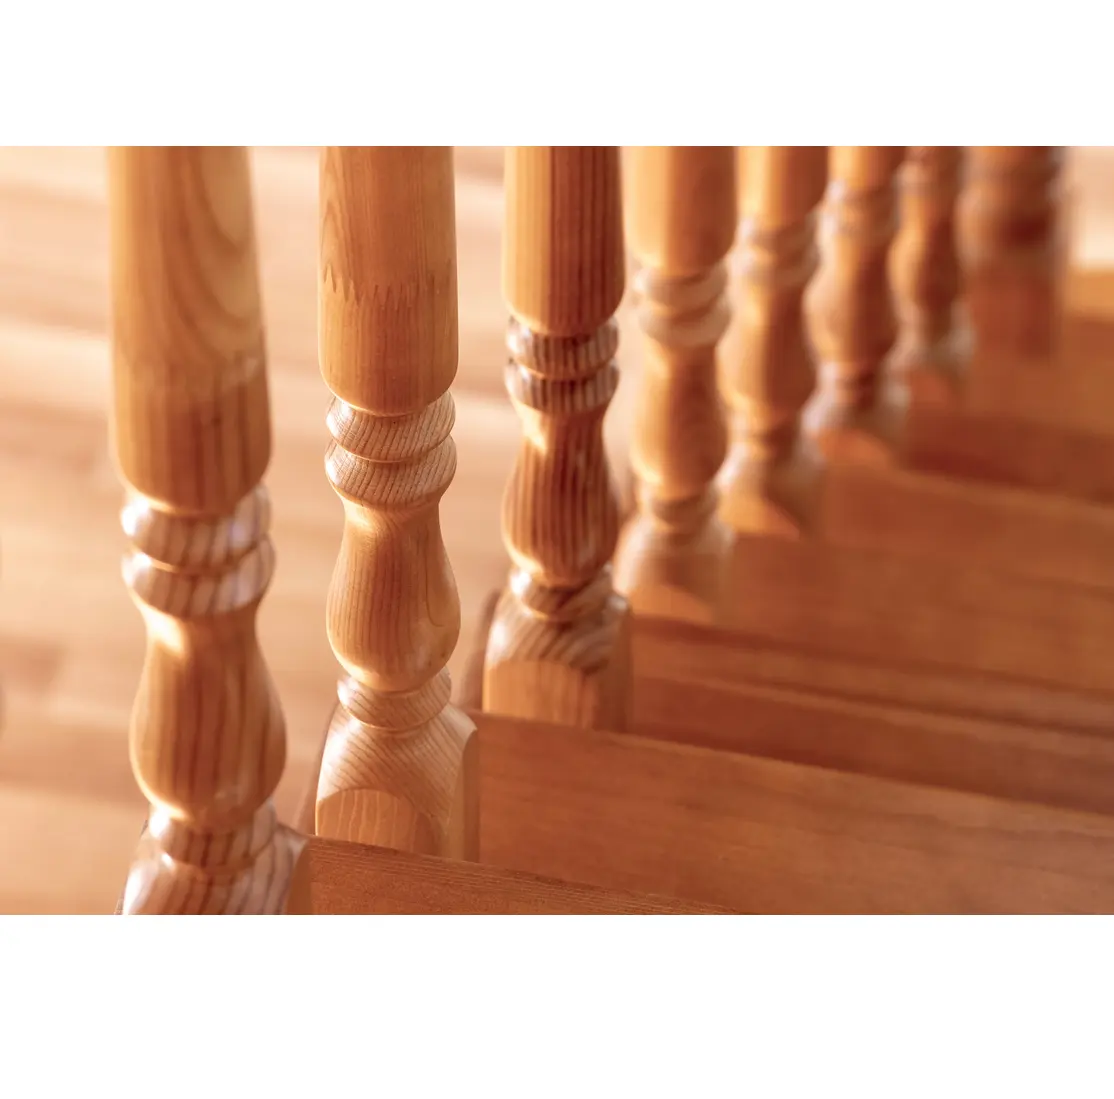 Servicio OEM/ODM para tallar escaleras de madera pasamanos balaustrada de madera pillarmodern escaleras de madera gran oferta